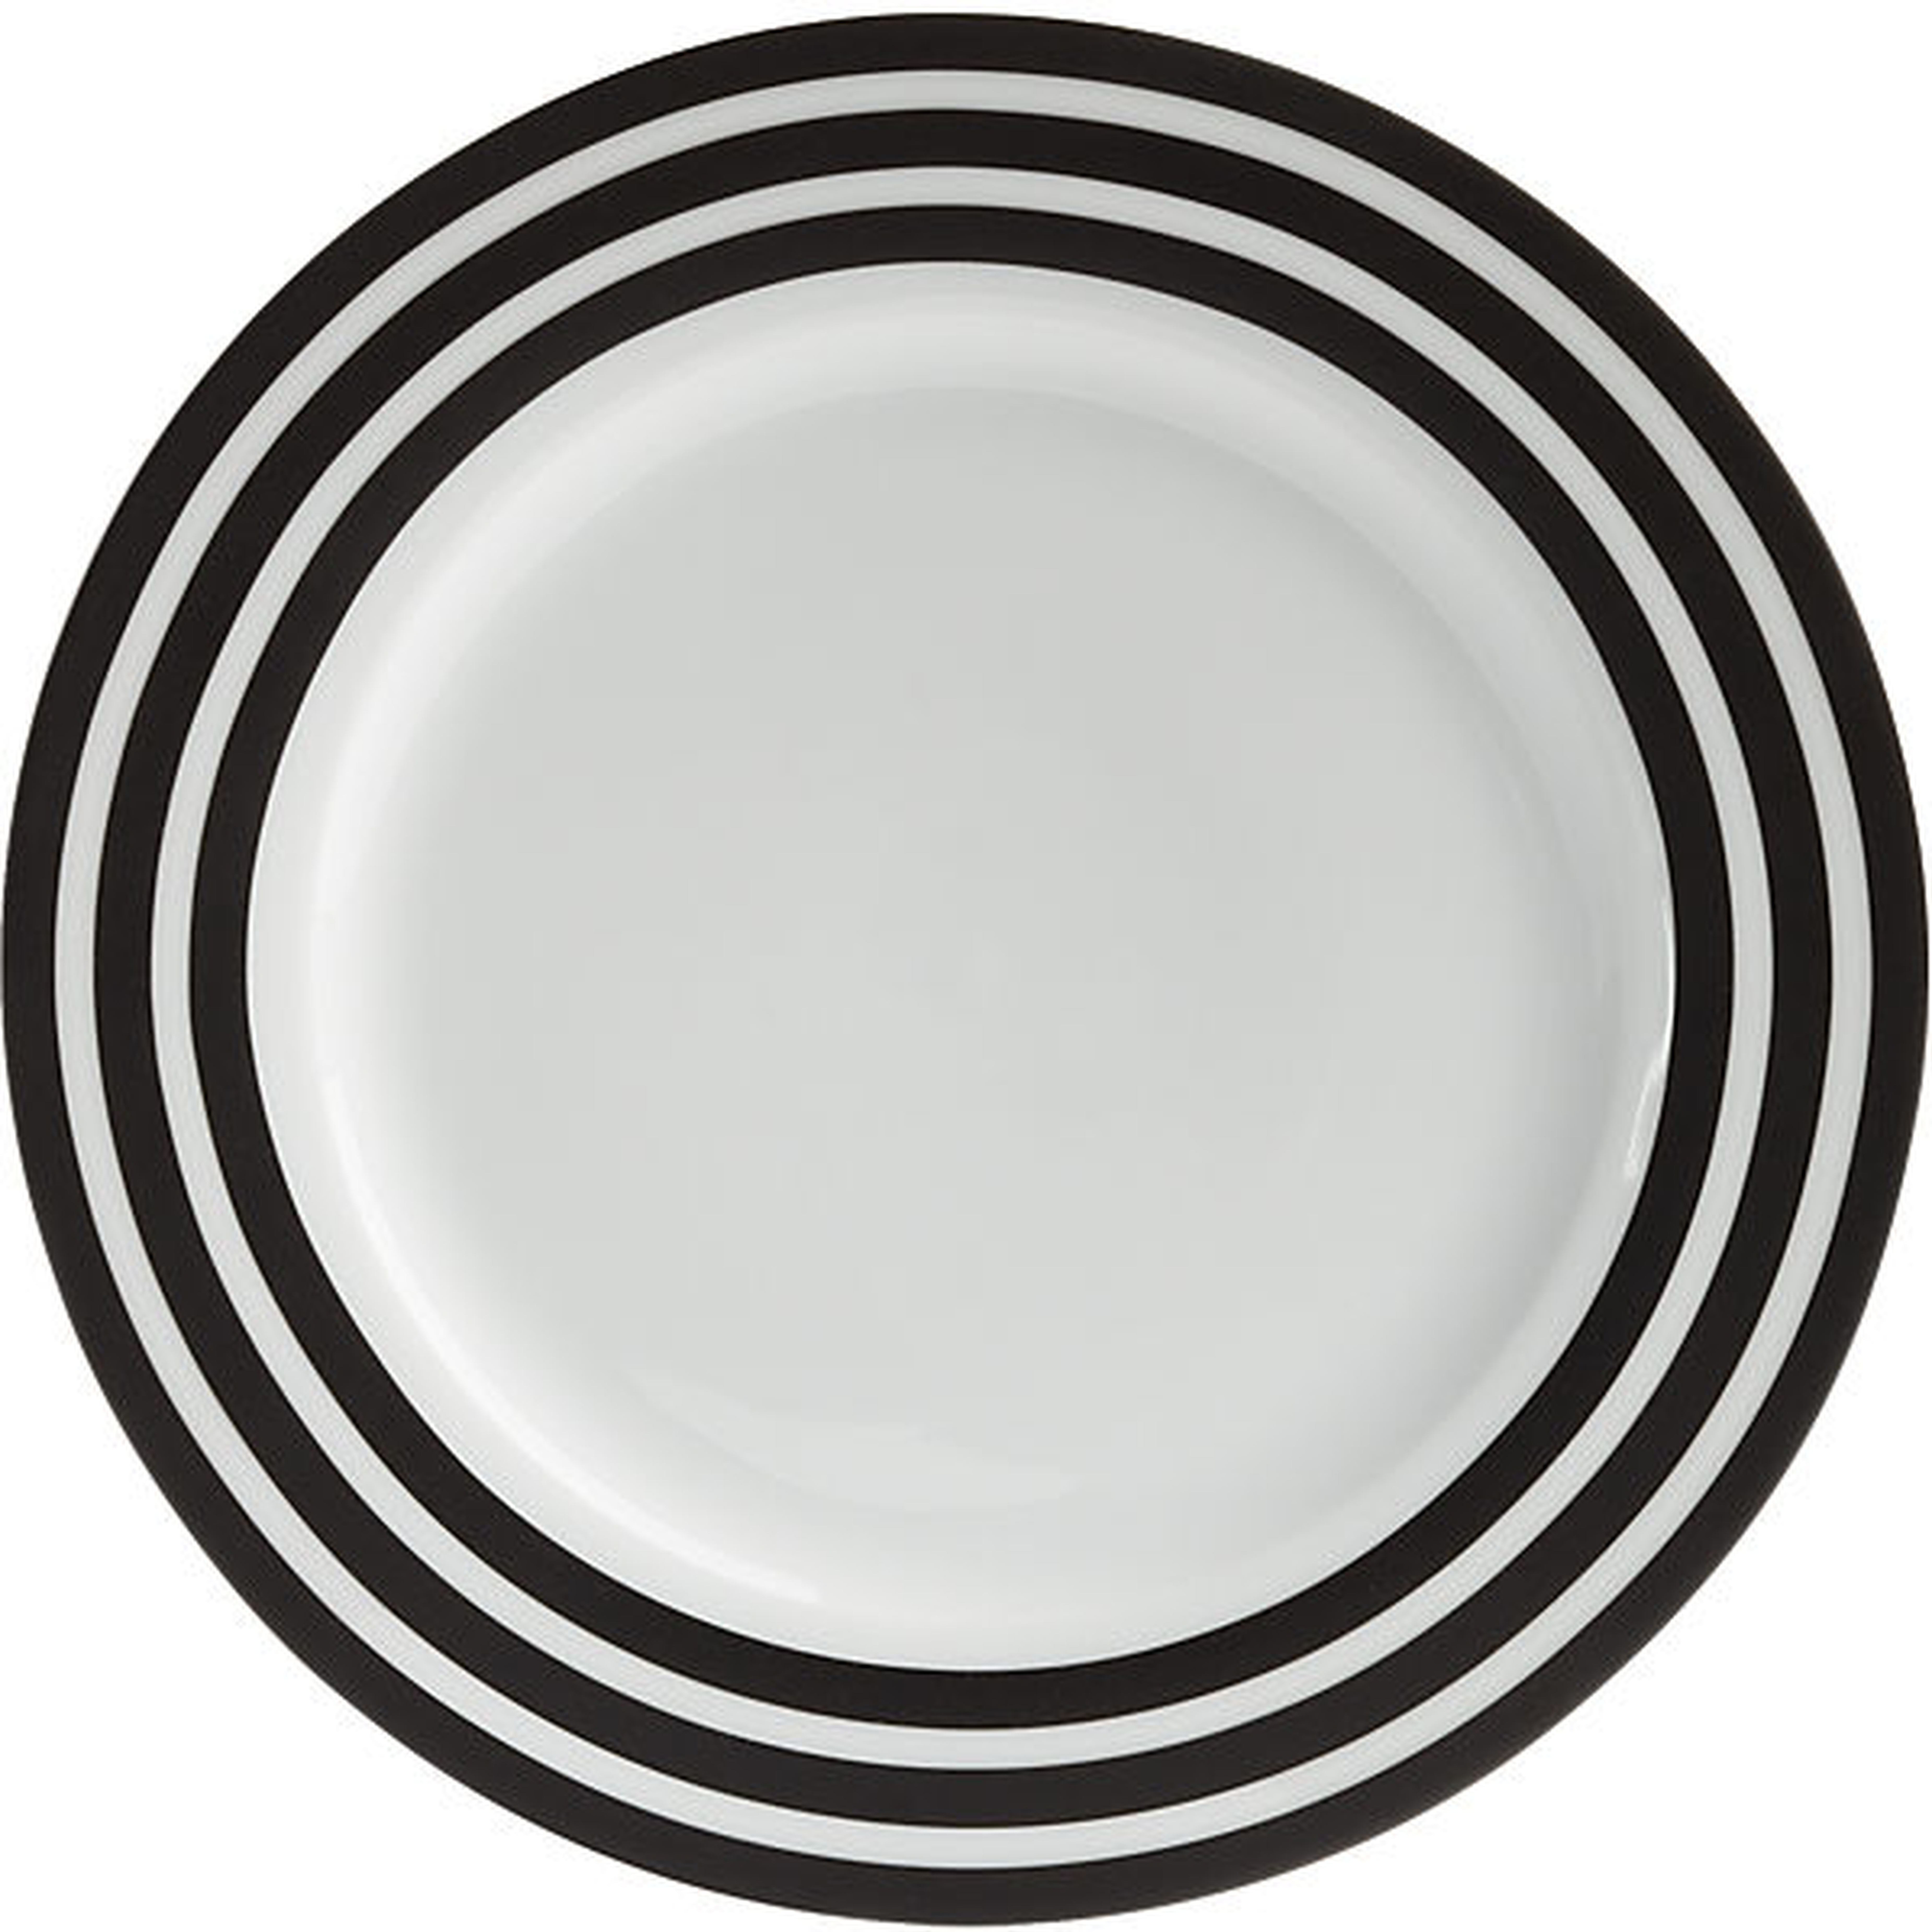 Ring dinner plate - CB2